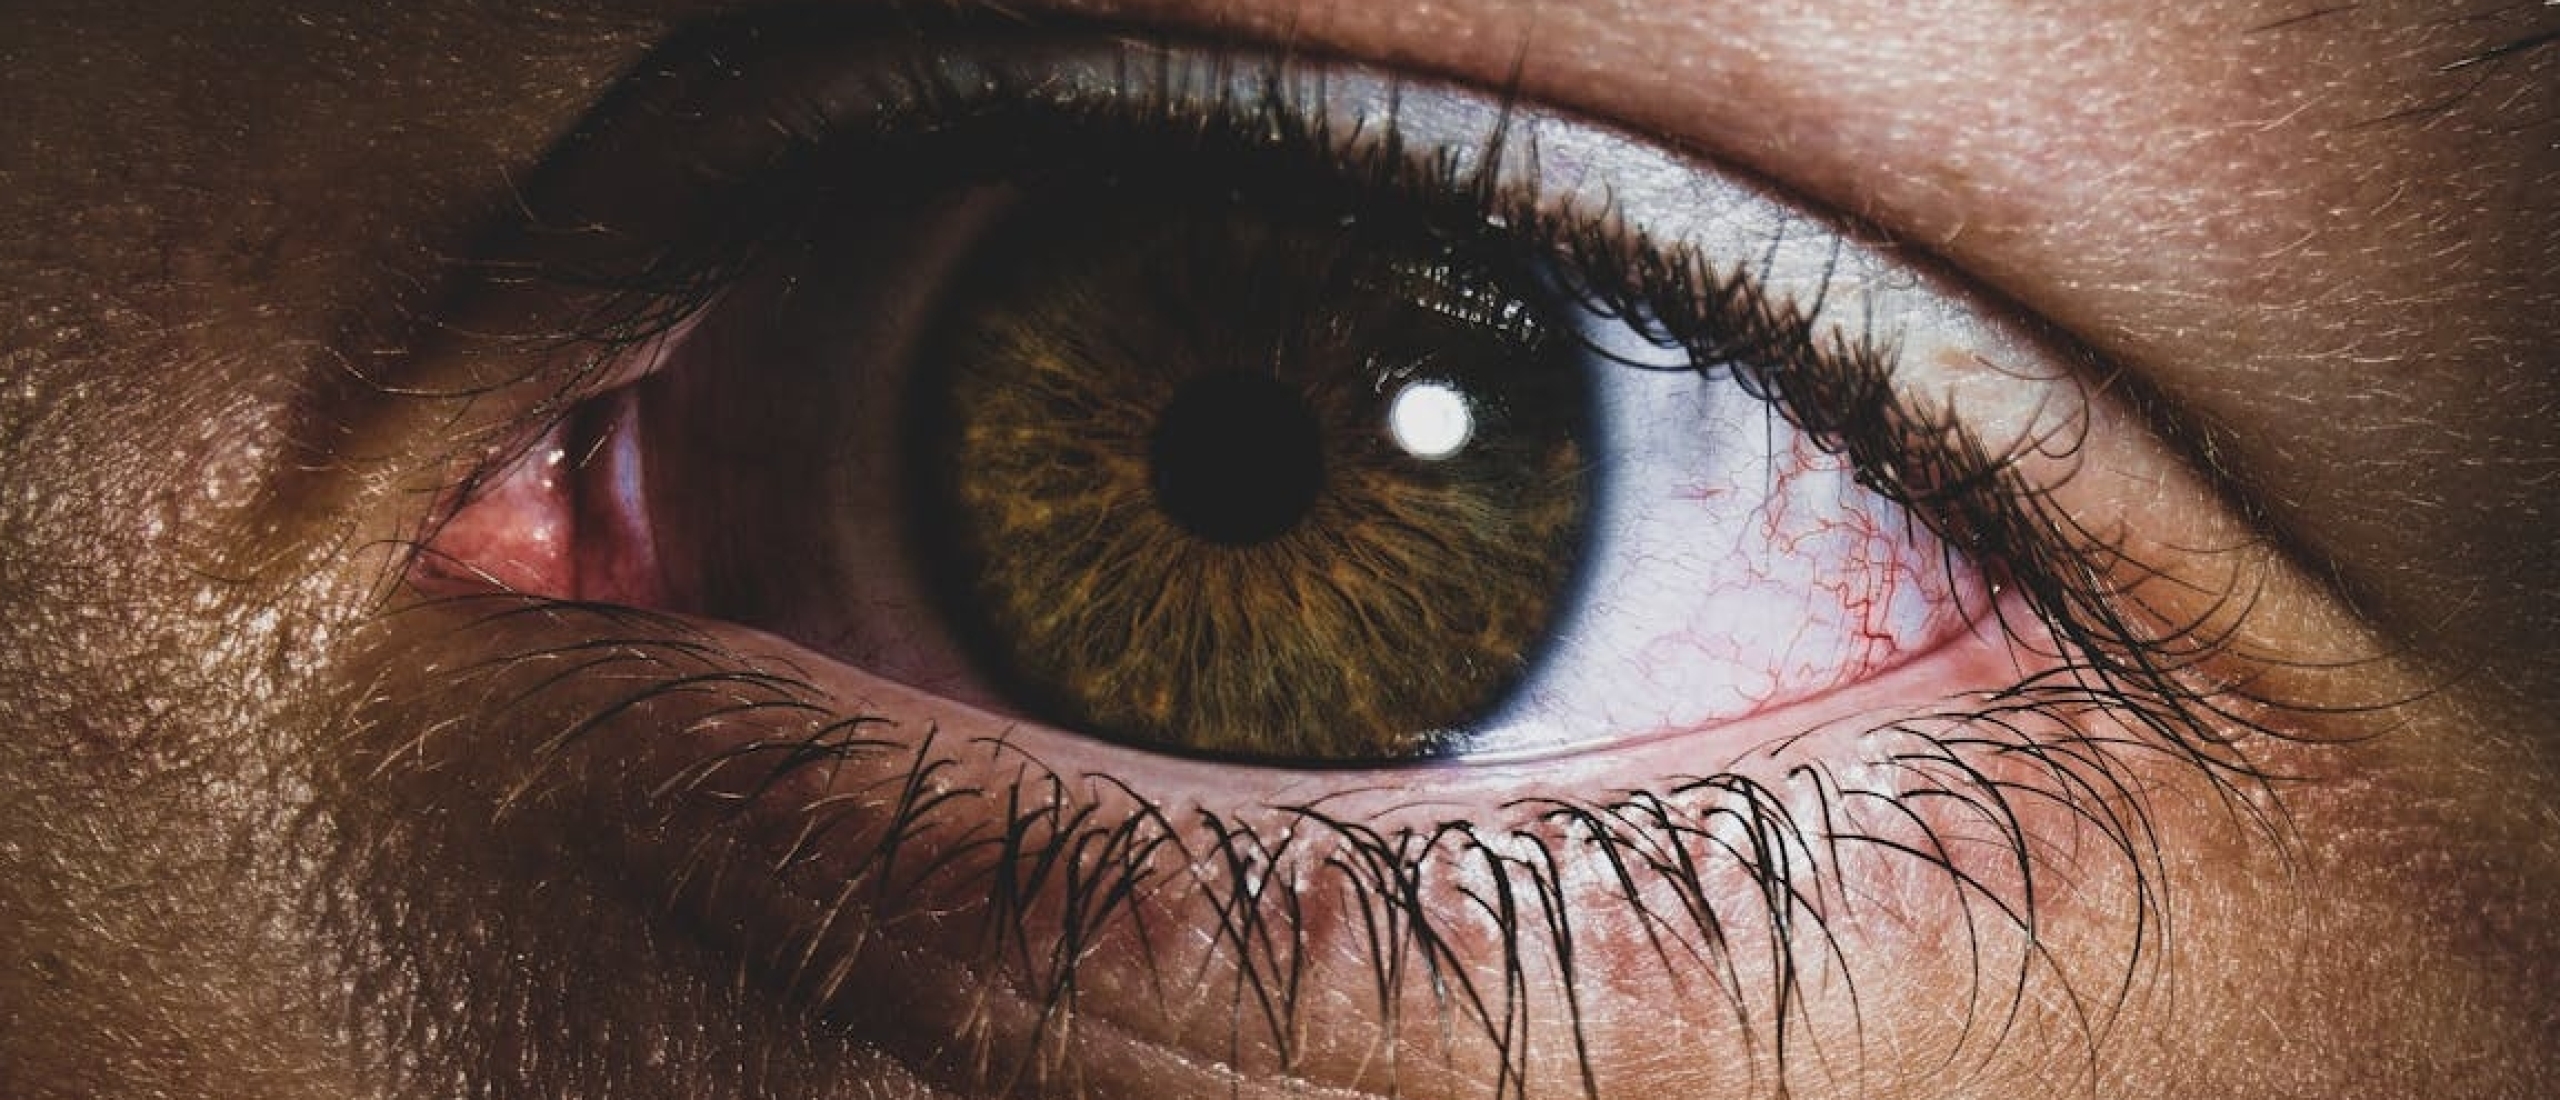 Hoe om te gaan met oogklachten? Tips en advies voor verschillende oogproblemen, gezondheid.nl